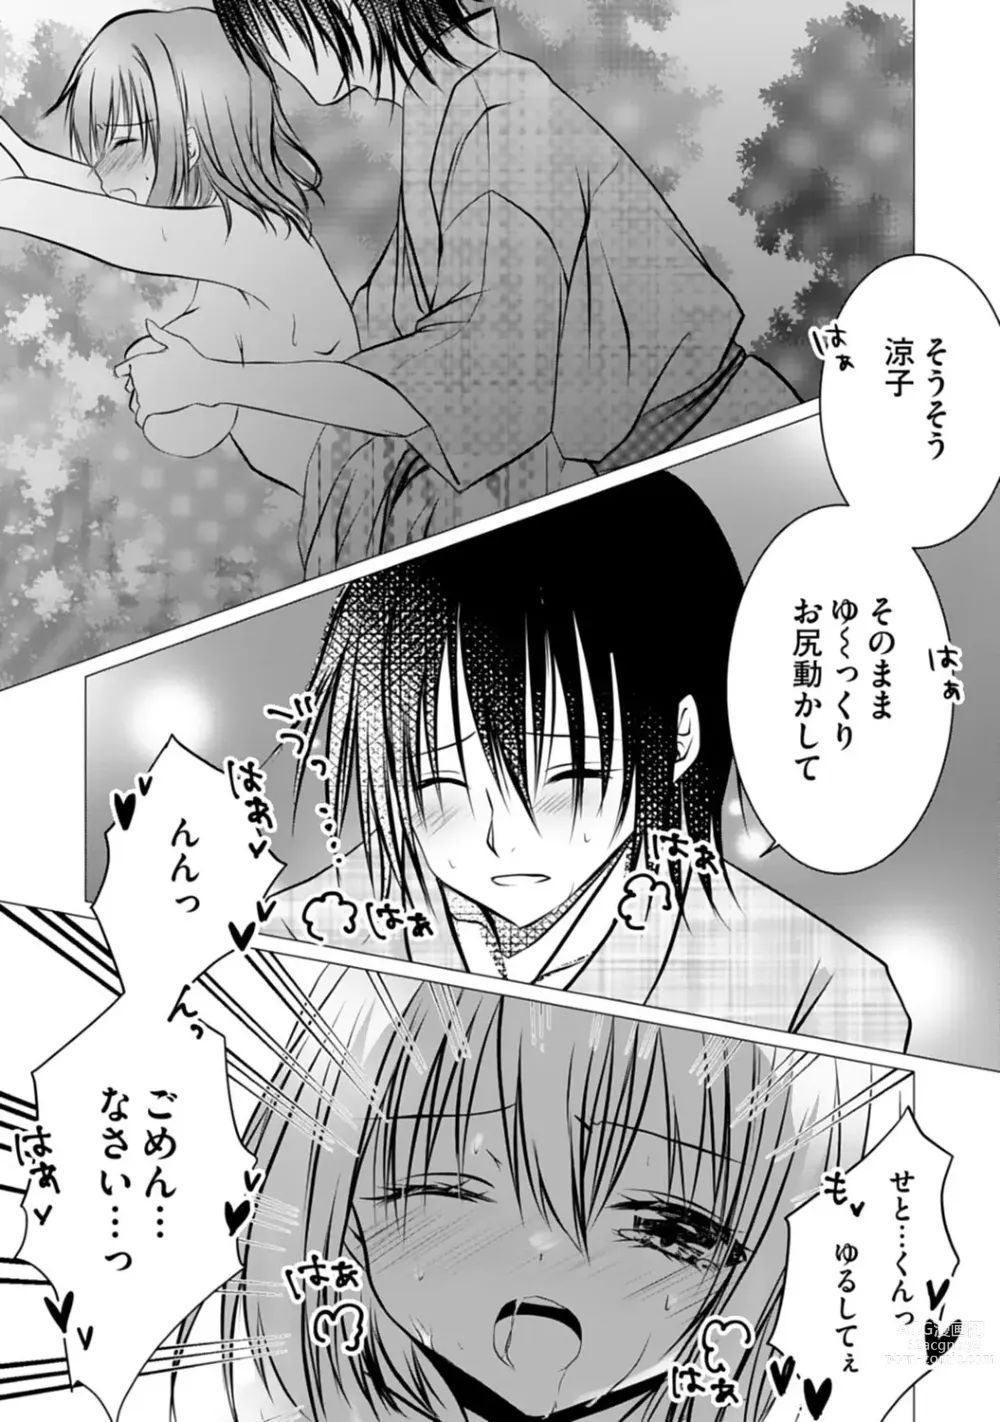 Page 103 of manga Bocchi no Boku demo, Kuzu no Yarichin ni Nareru tte Honto desu ka?